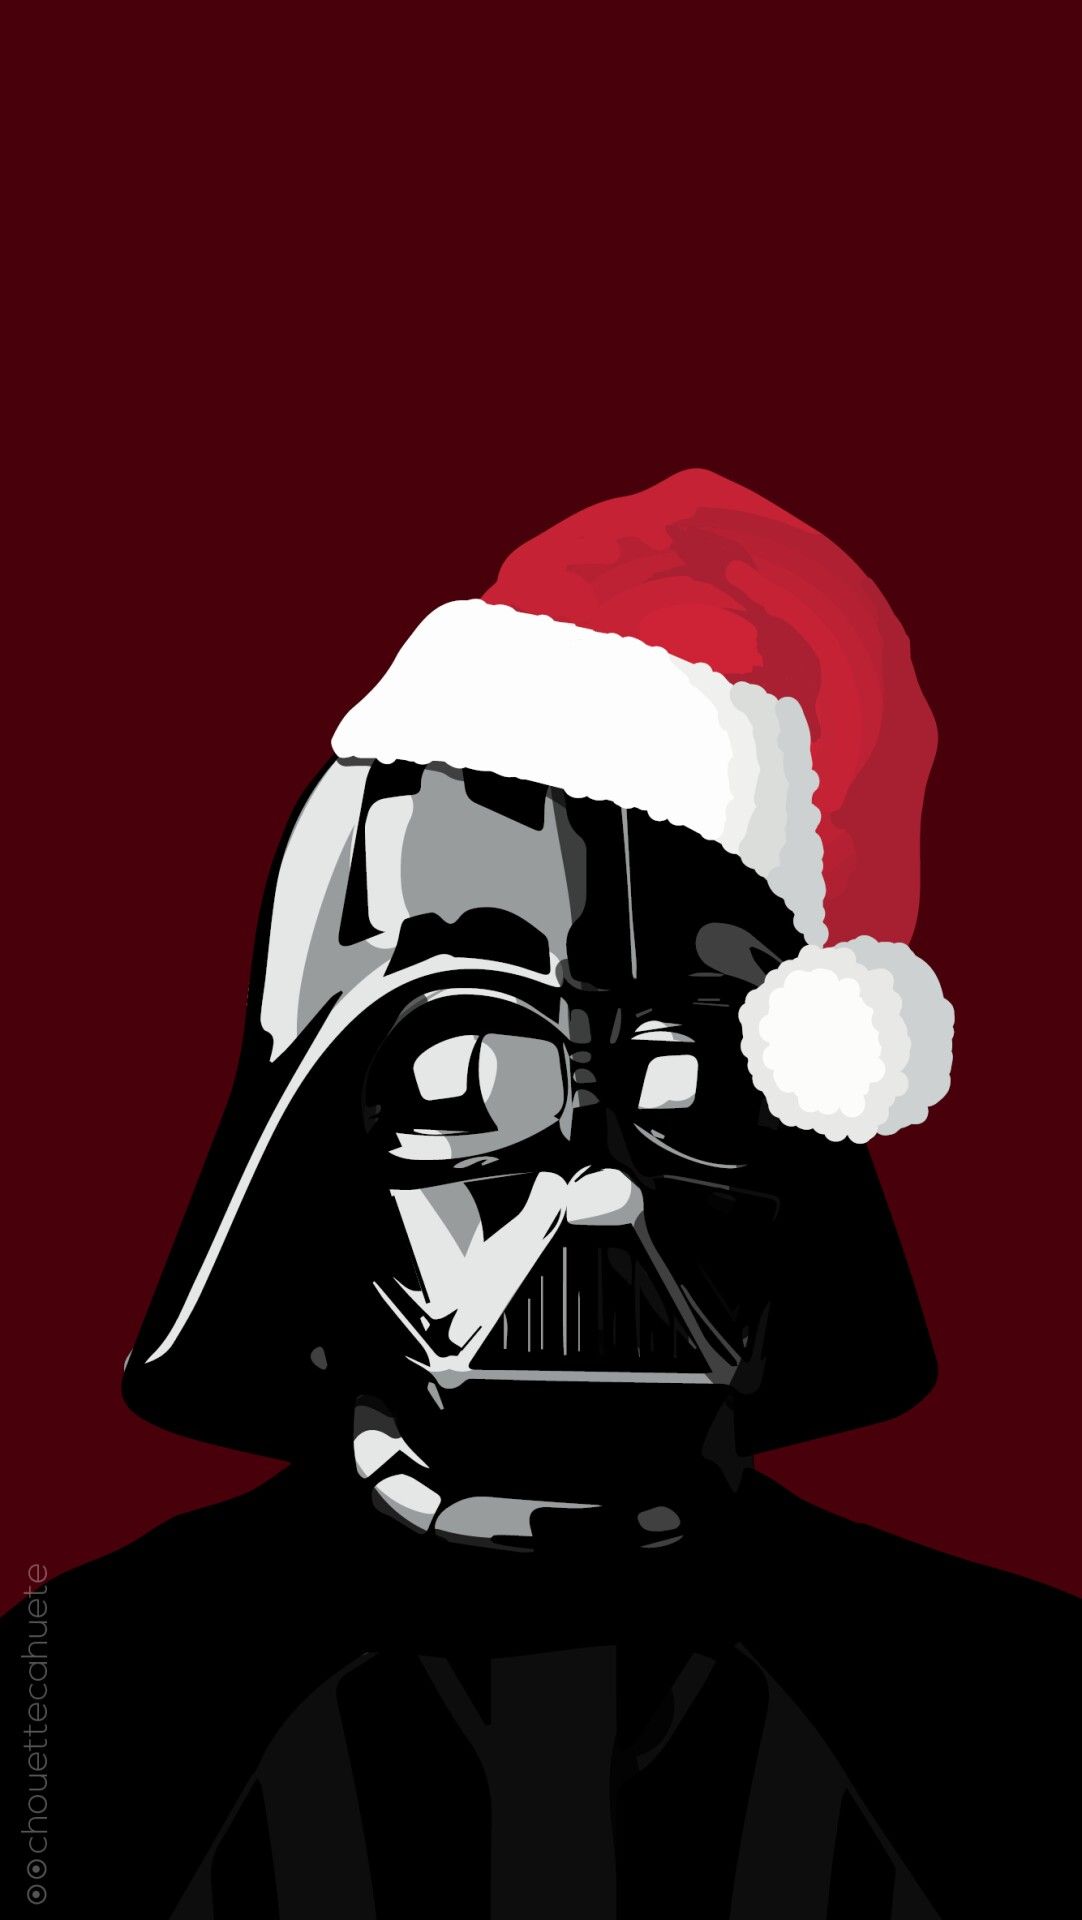 star wars darth vader wearing a christmas hat. Star wars background, Star wars fan art, Star wars picture